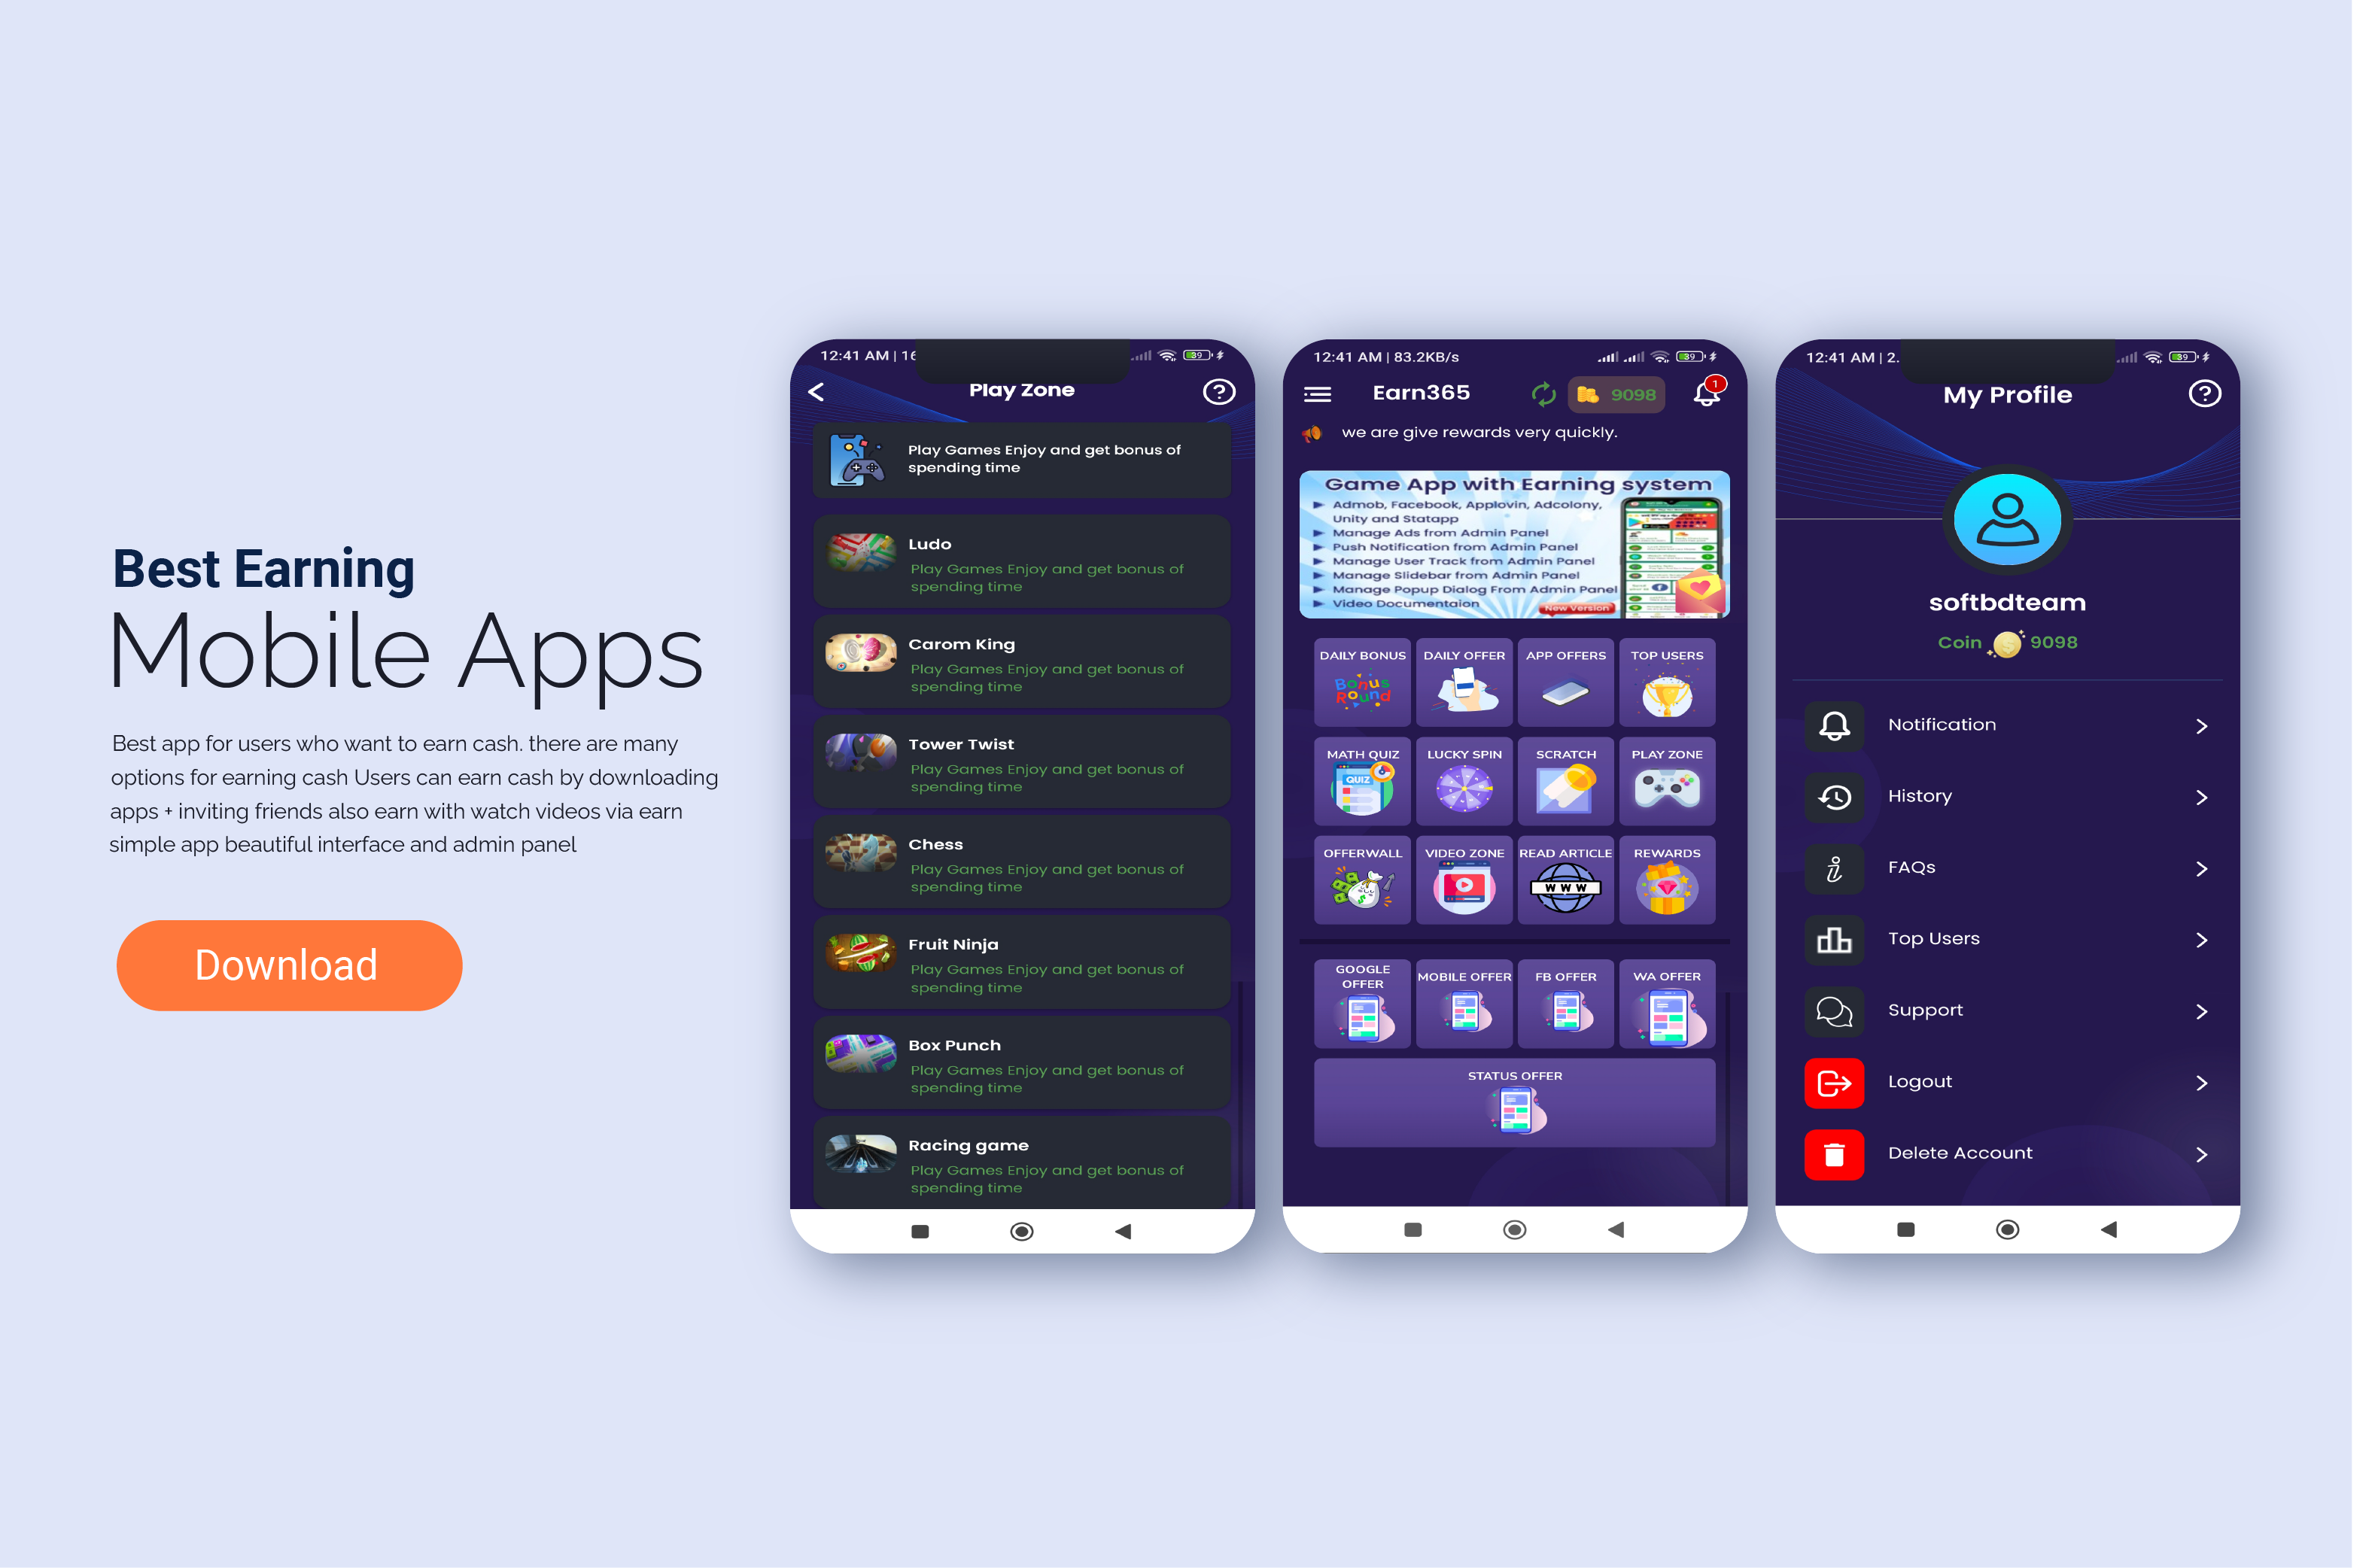 111837I will flutter, android studio app developer android mobile app development